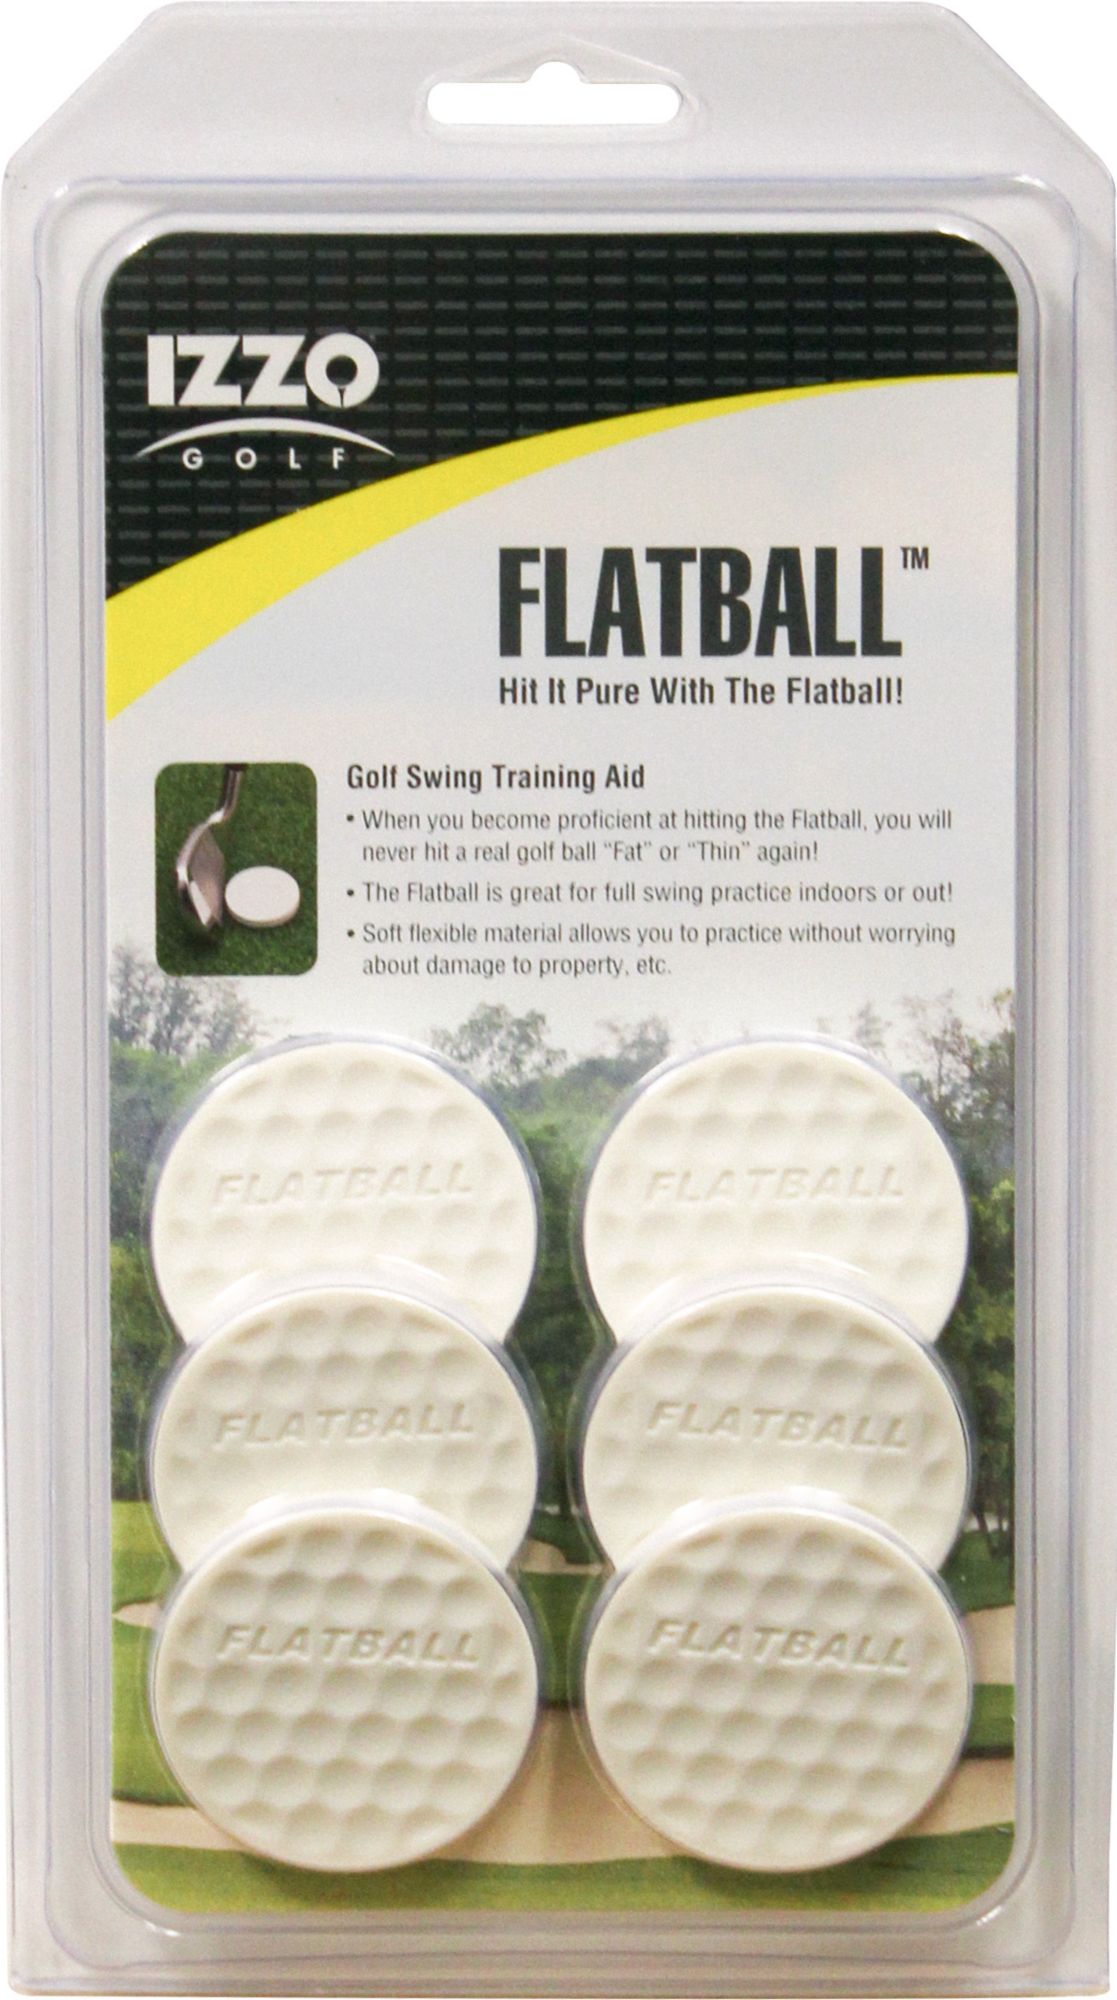 IZZO Flatball Golf Swing Training Aid - 6 Pack